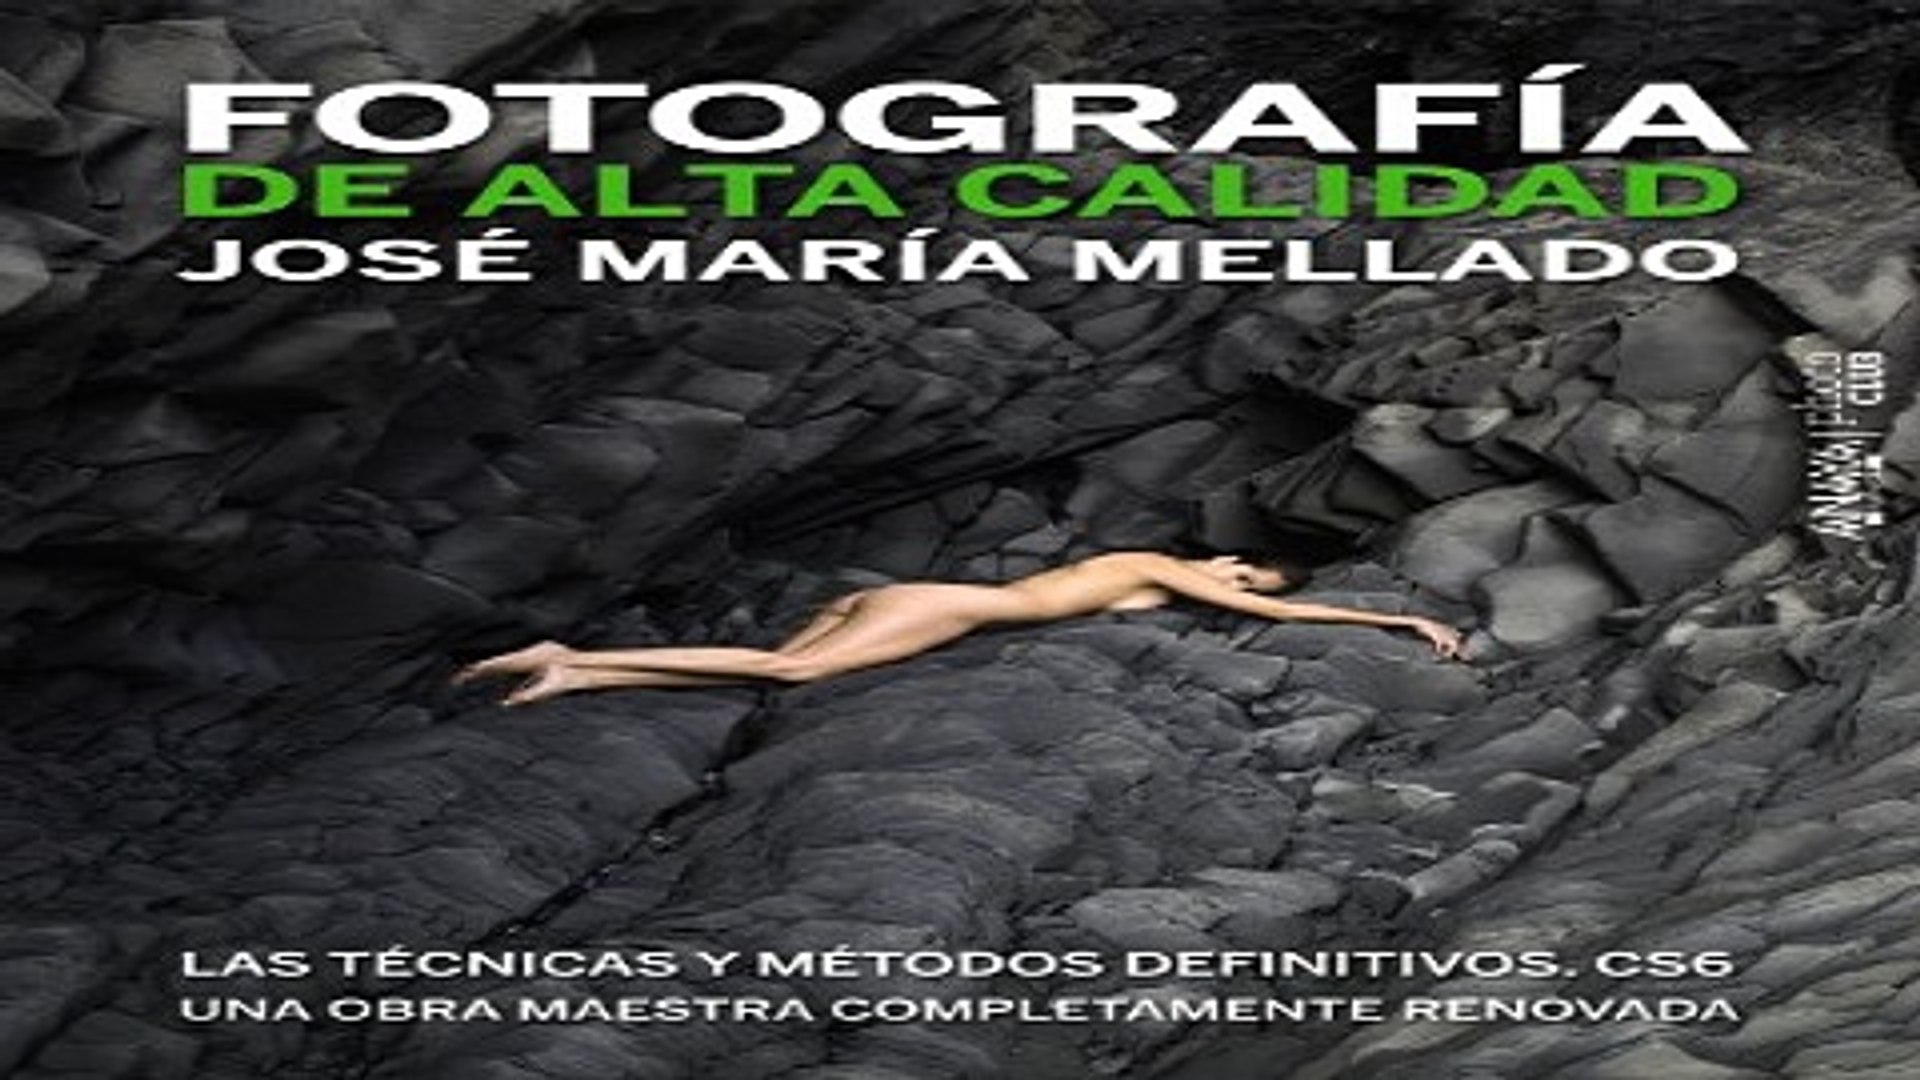 Download Fotografia de Alta Calidad Las tecnicas y metodos definitivos CS6  Spanish Edition - video Dailymotion